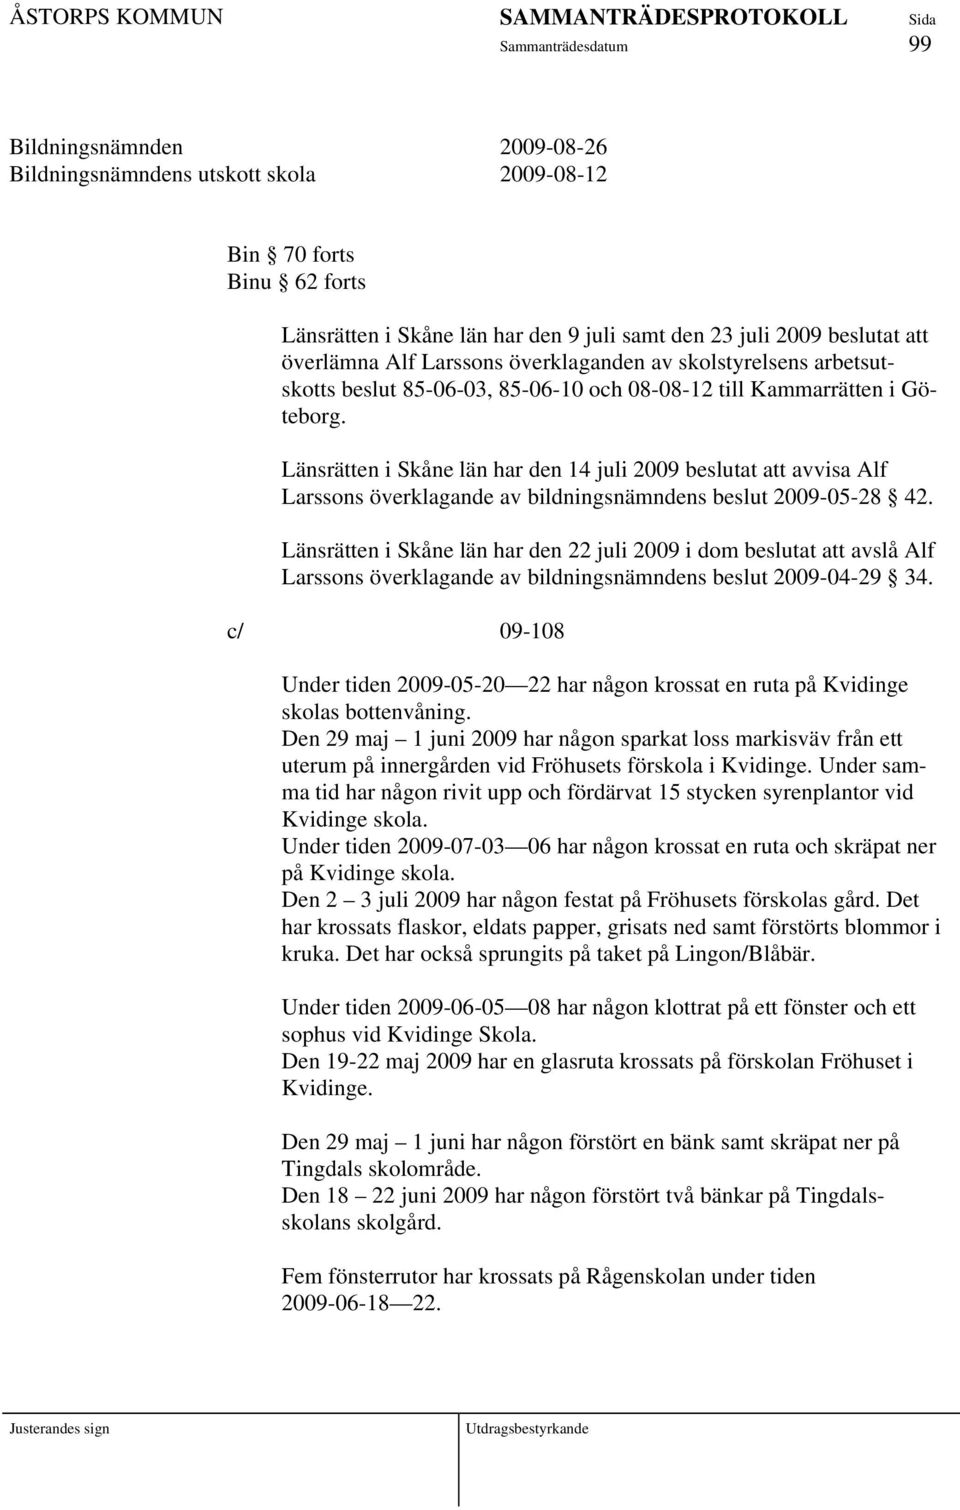 Länsrätten i Skåne län har den 14 juli 2009 beslutat att avvisa Alf Larssons överklagande av bildningsnämndens beslut 2009-05-28 42.